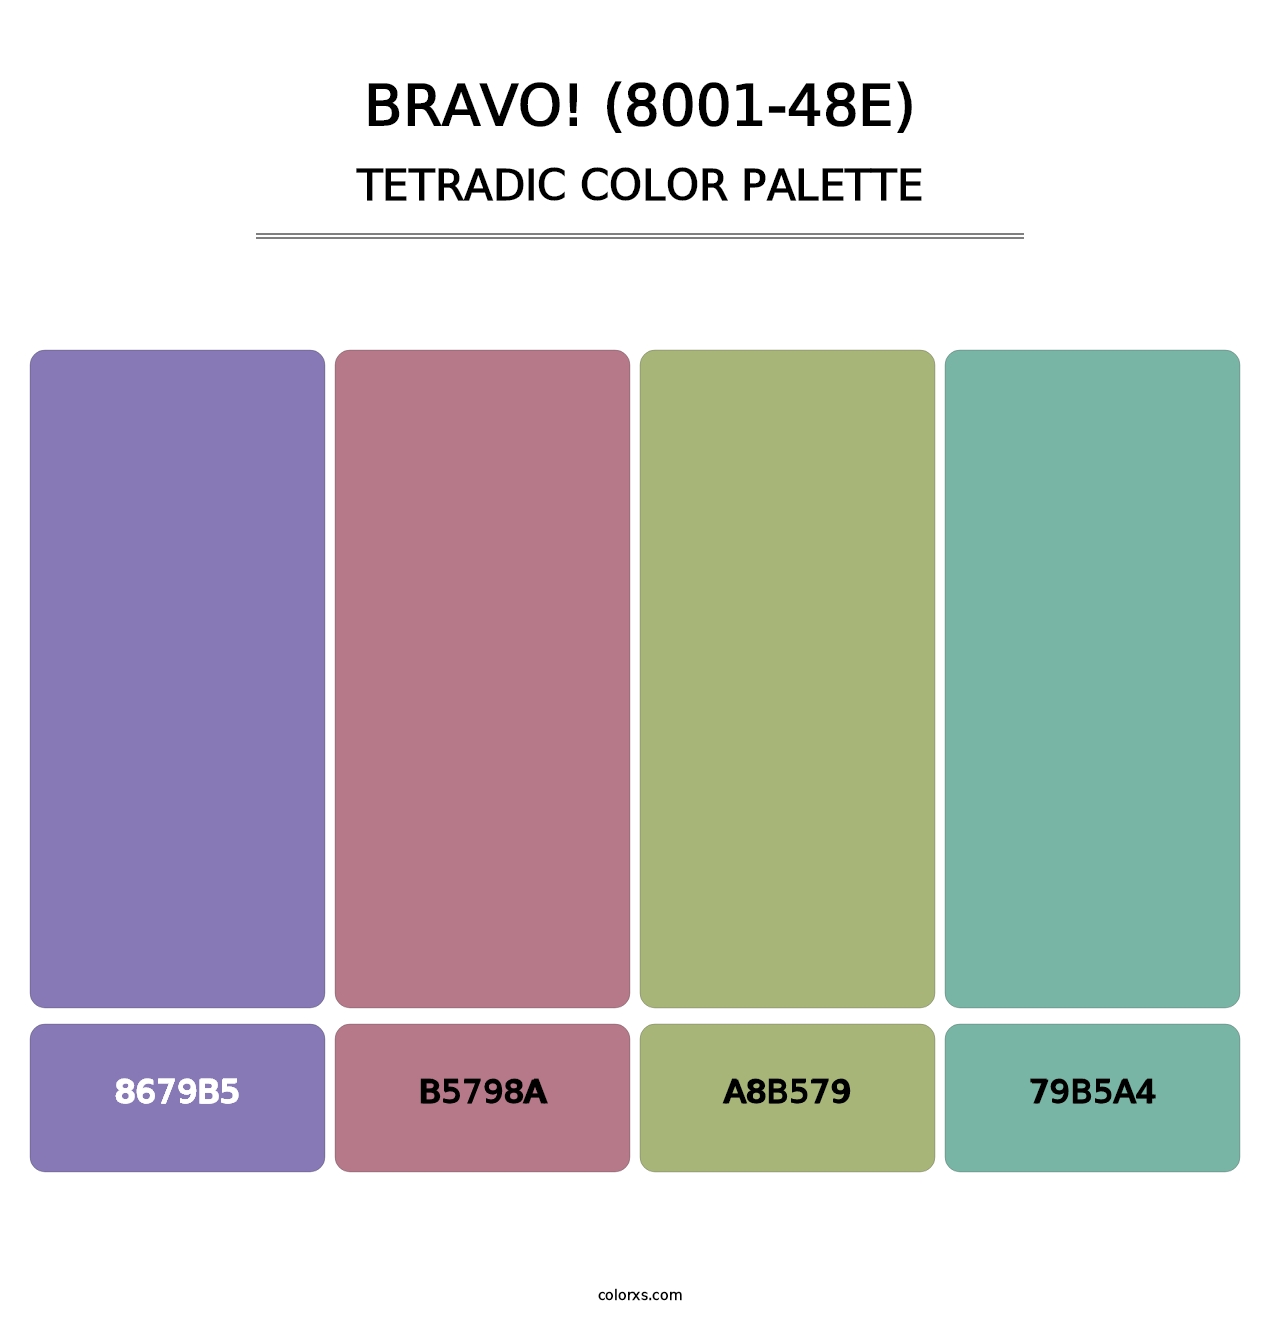 Bravo! (8001-48E) - Tetradic Color Palette